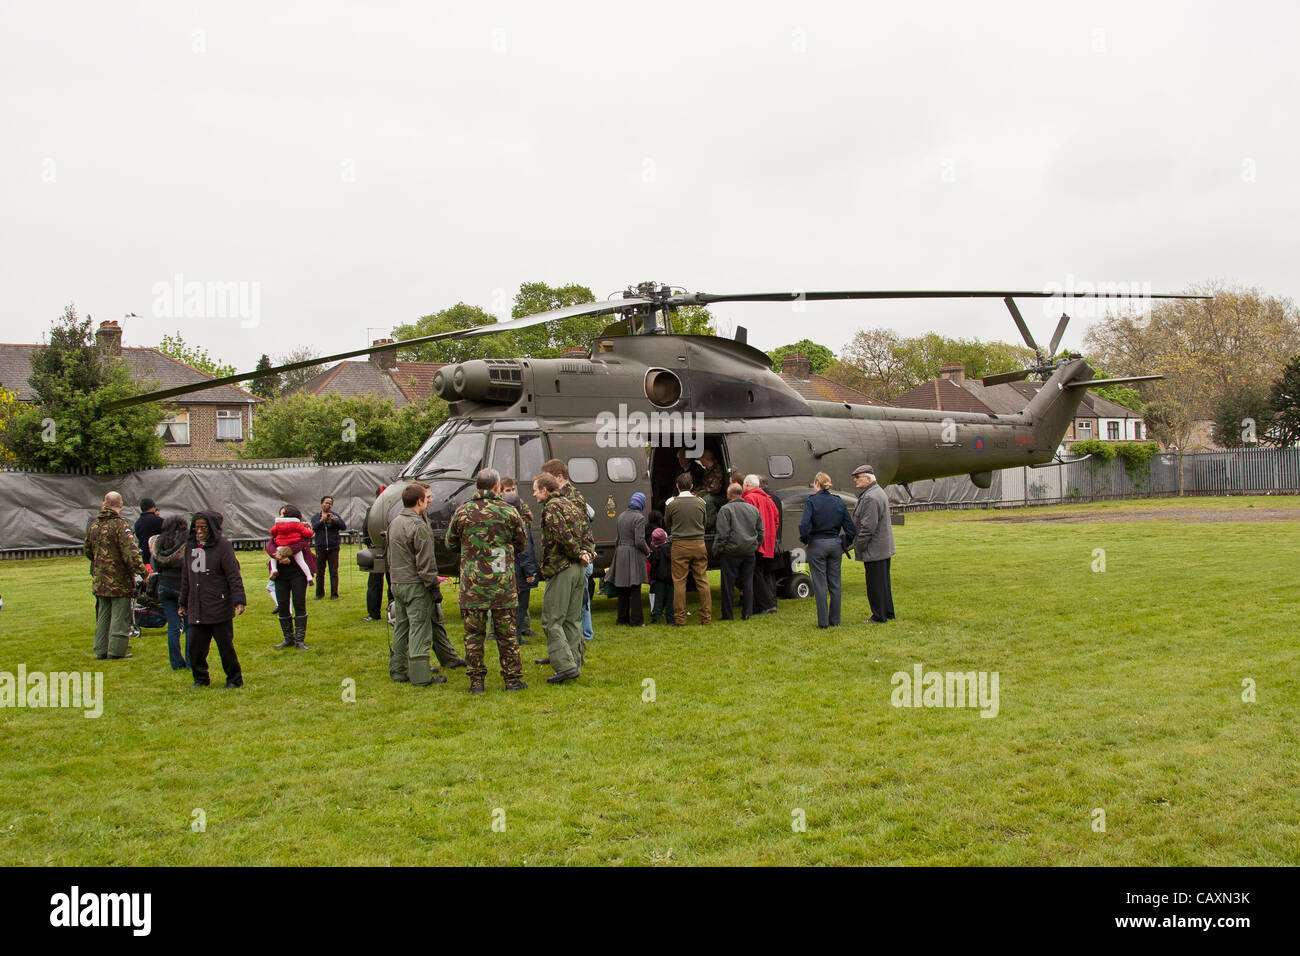 Vendredi 4 mai 2012 les résidents d'Ilford invités à regarder autour d'hélicoptères Puma de la RAF qui feront partie de la Force de réaction de l'air pour les Jeux Olympiques de 2012, Banque D'Images